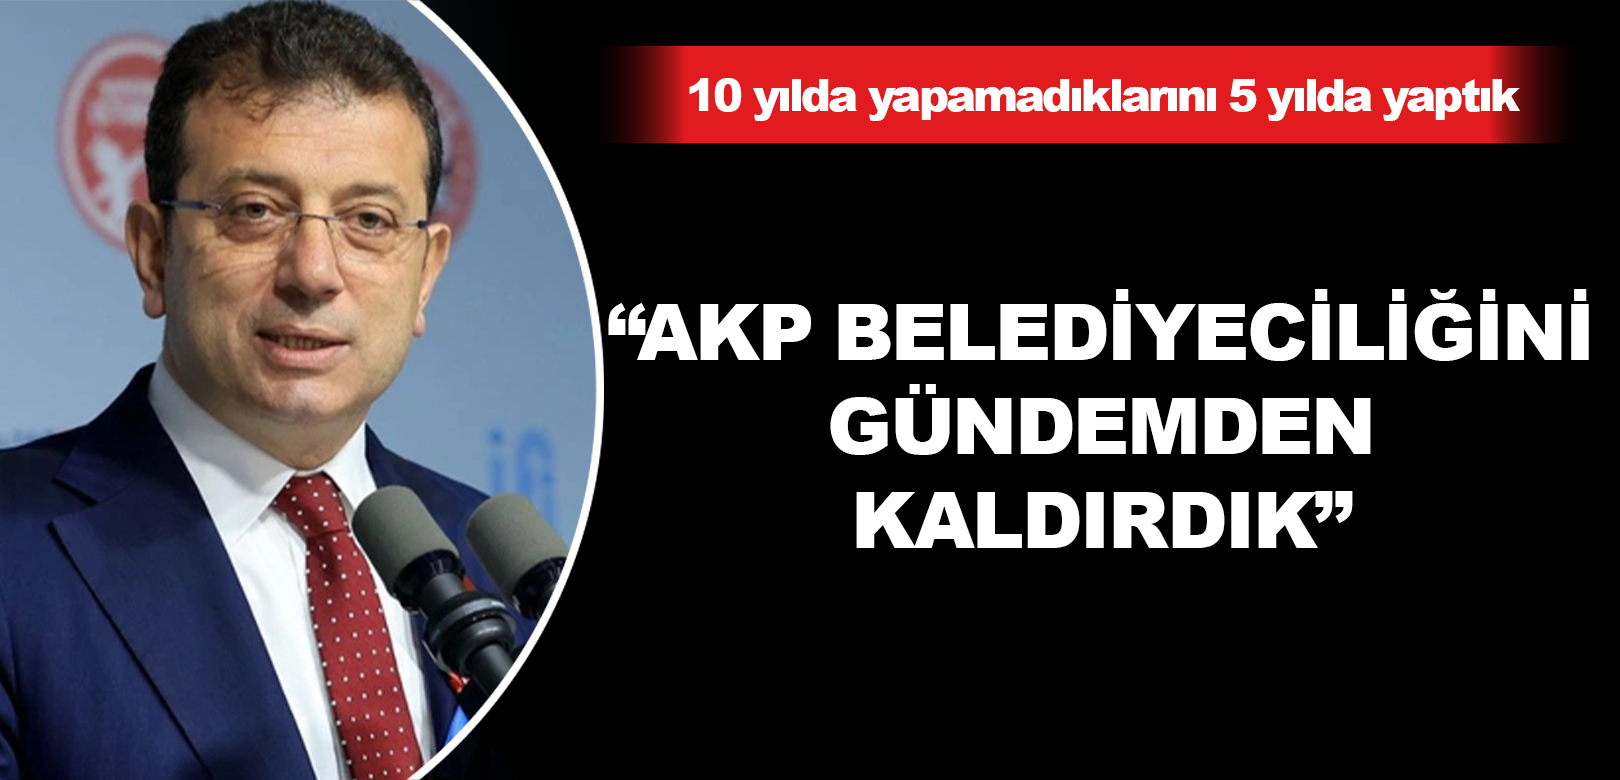 Ekrem İmamoğlu: AKP belediyeciliğini gündemden kaldırdık